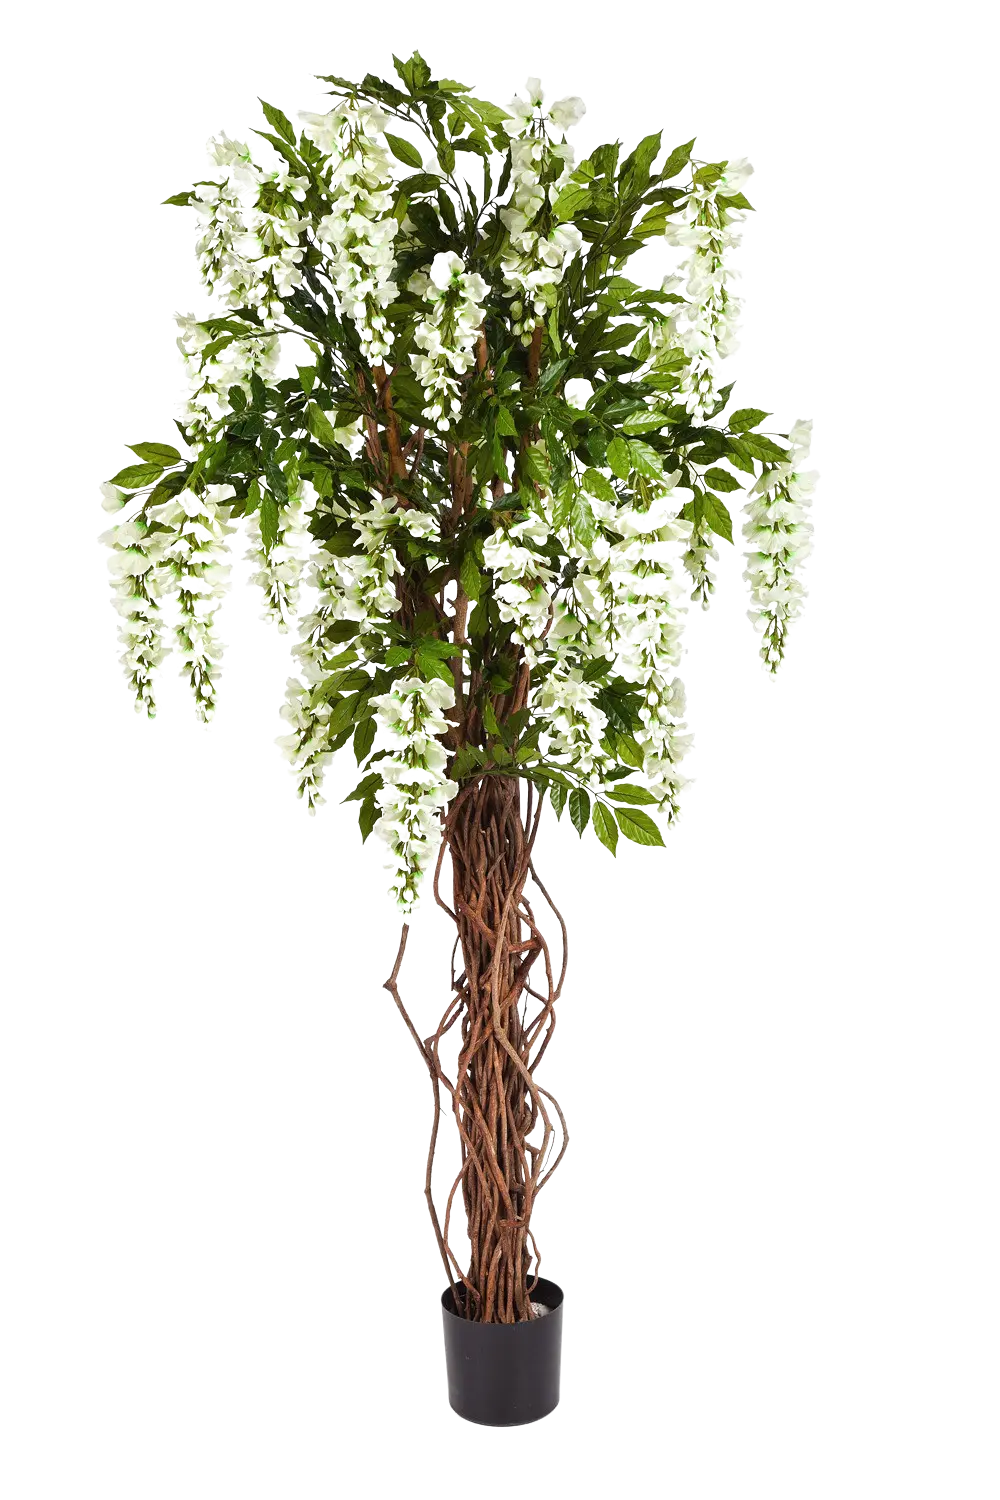 Künstlicher Blauregen - Ria auf transparentem Hintergrund mit echt wirkenden Kunstblättern. Diese Kunstpflanze gehört zur Gattung/Familie der "Blauregen" bzw. "Kunst-Blauregen".